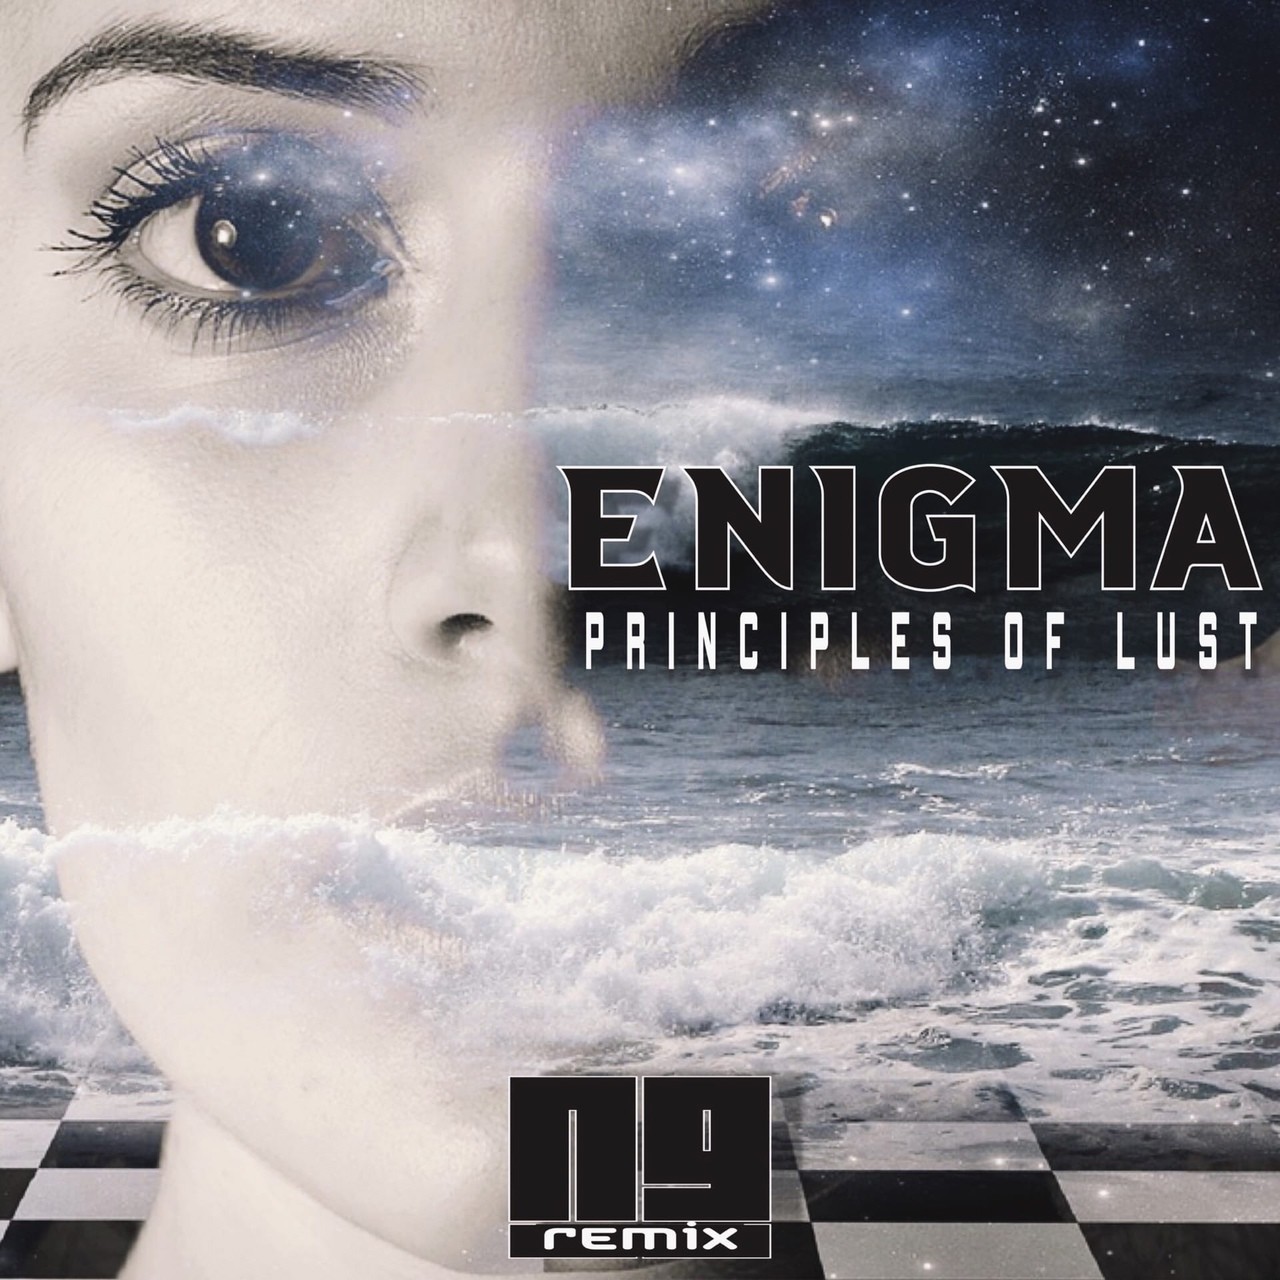 Слушать enigma в качестве. Enigma Ремих. Энигма principles of Lust. Энигма Remix. Enigma principles of Lust обложка.